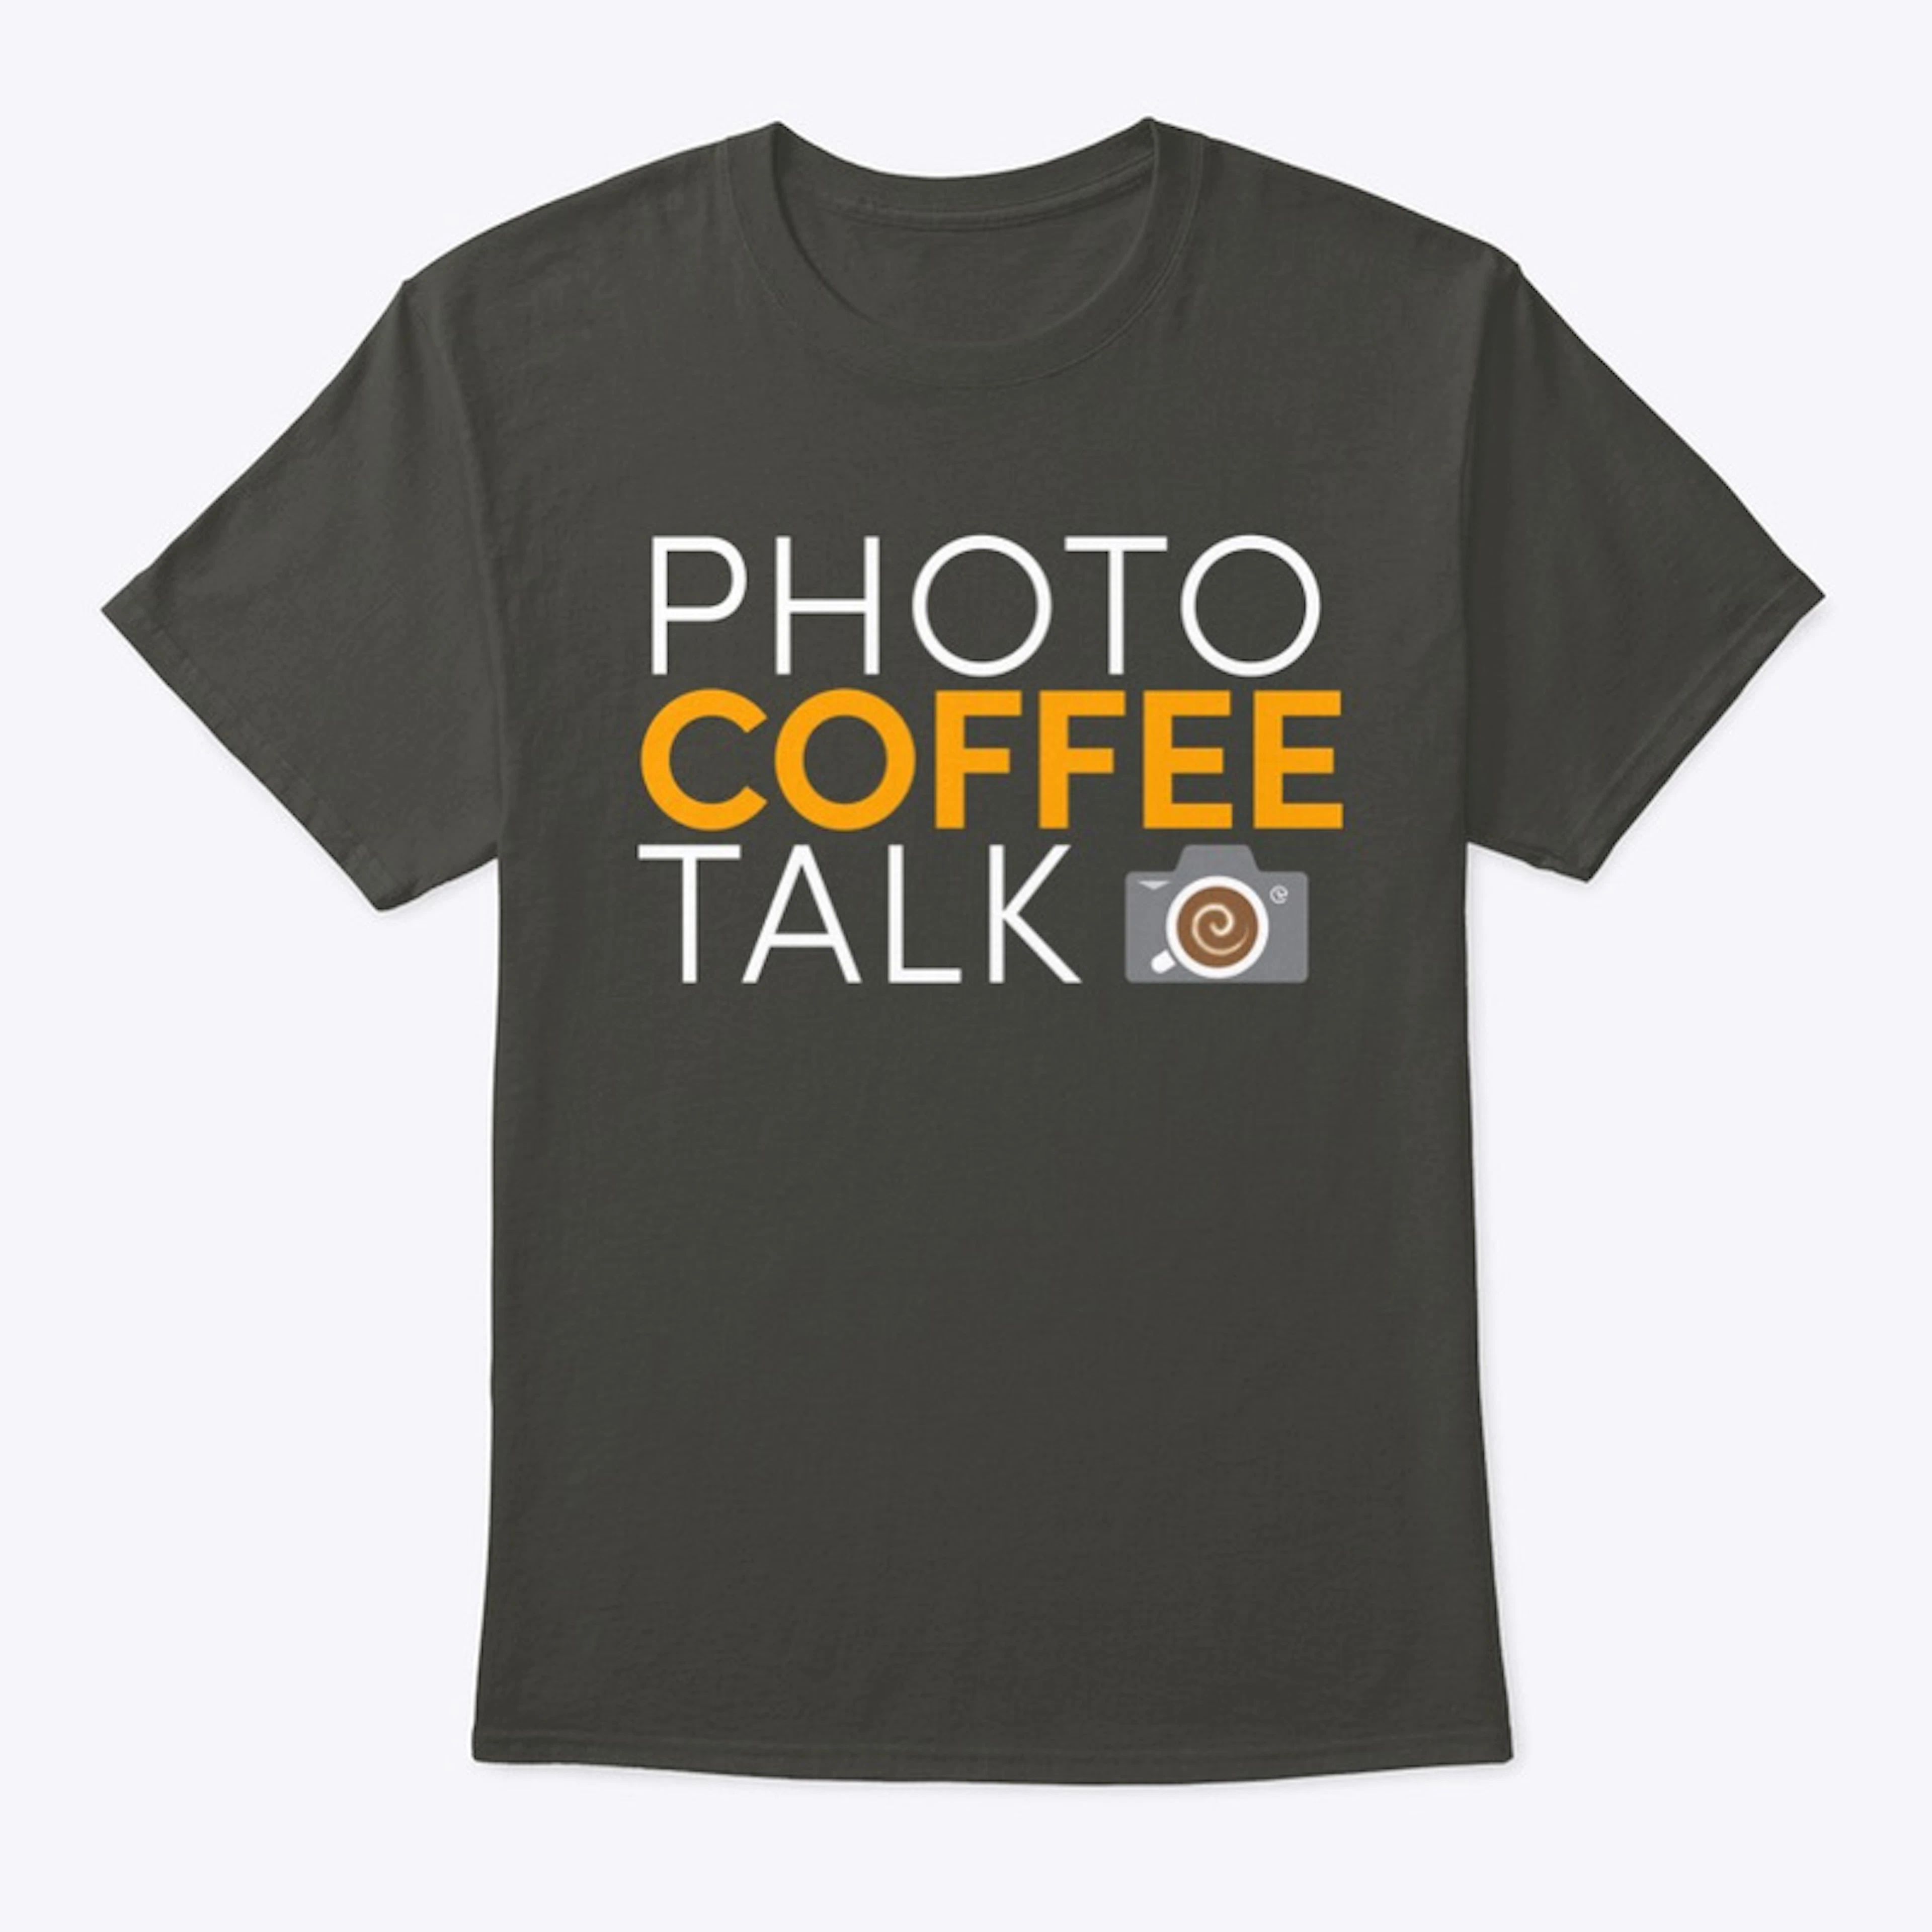 PHOTO COFFEE TALK Text Tee